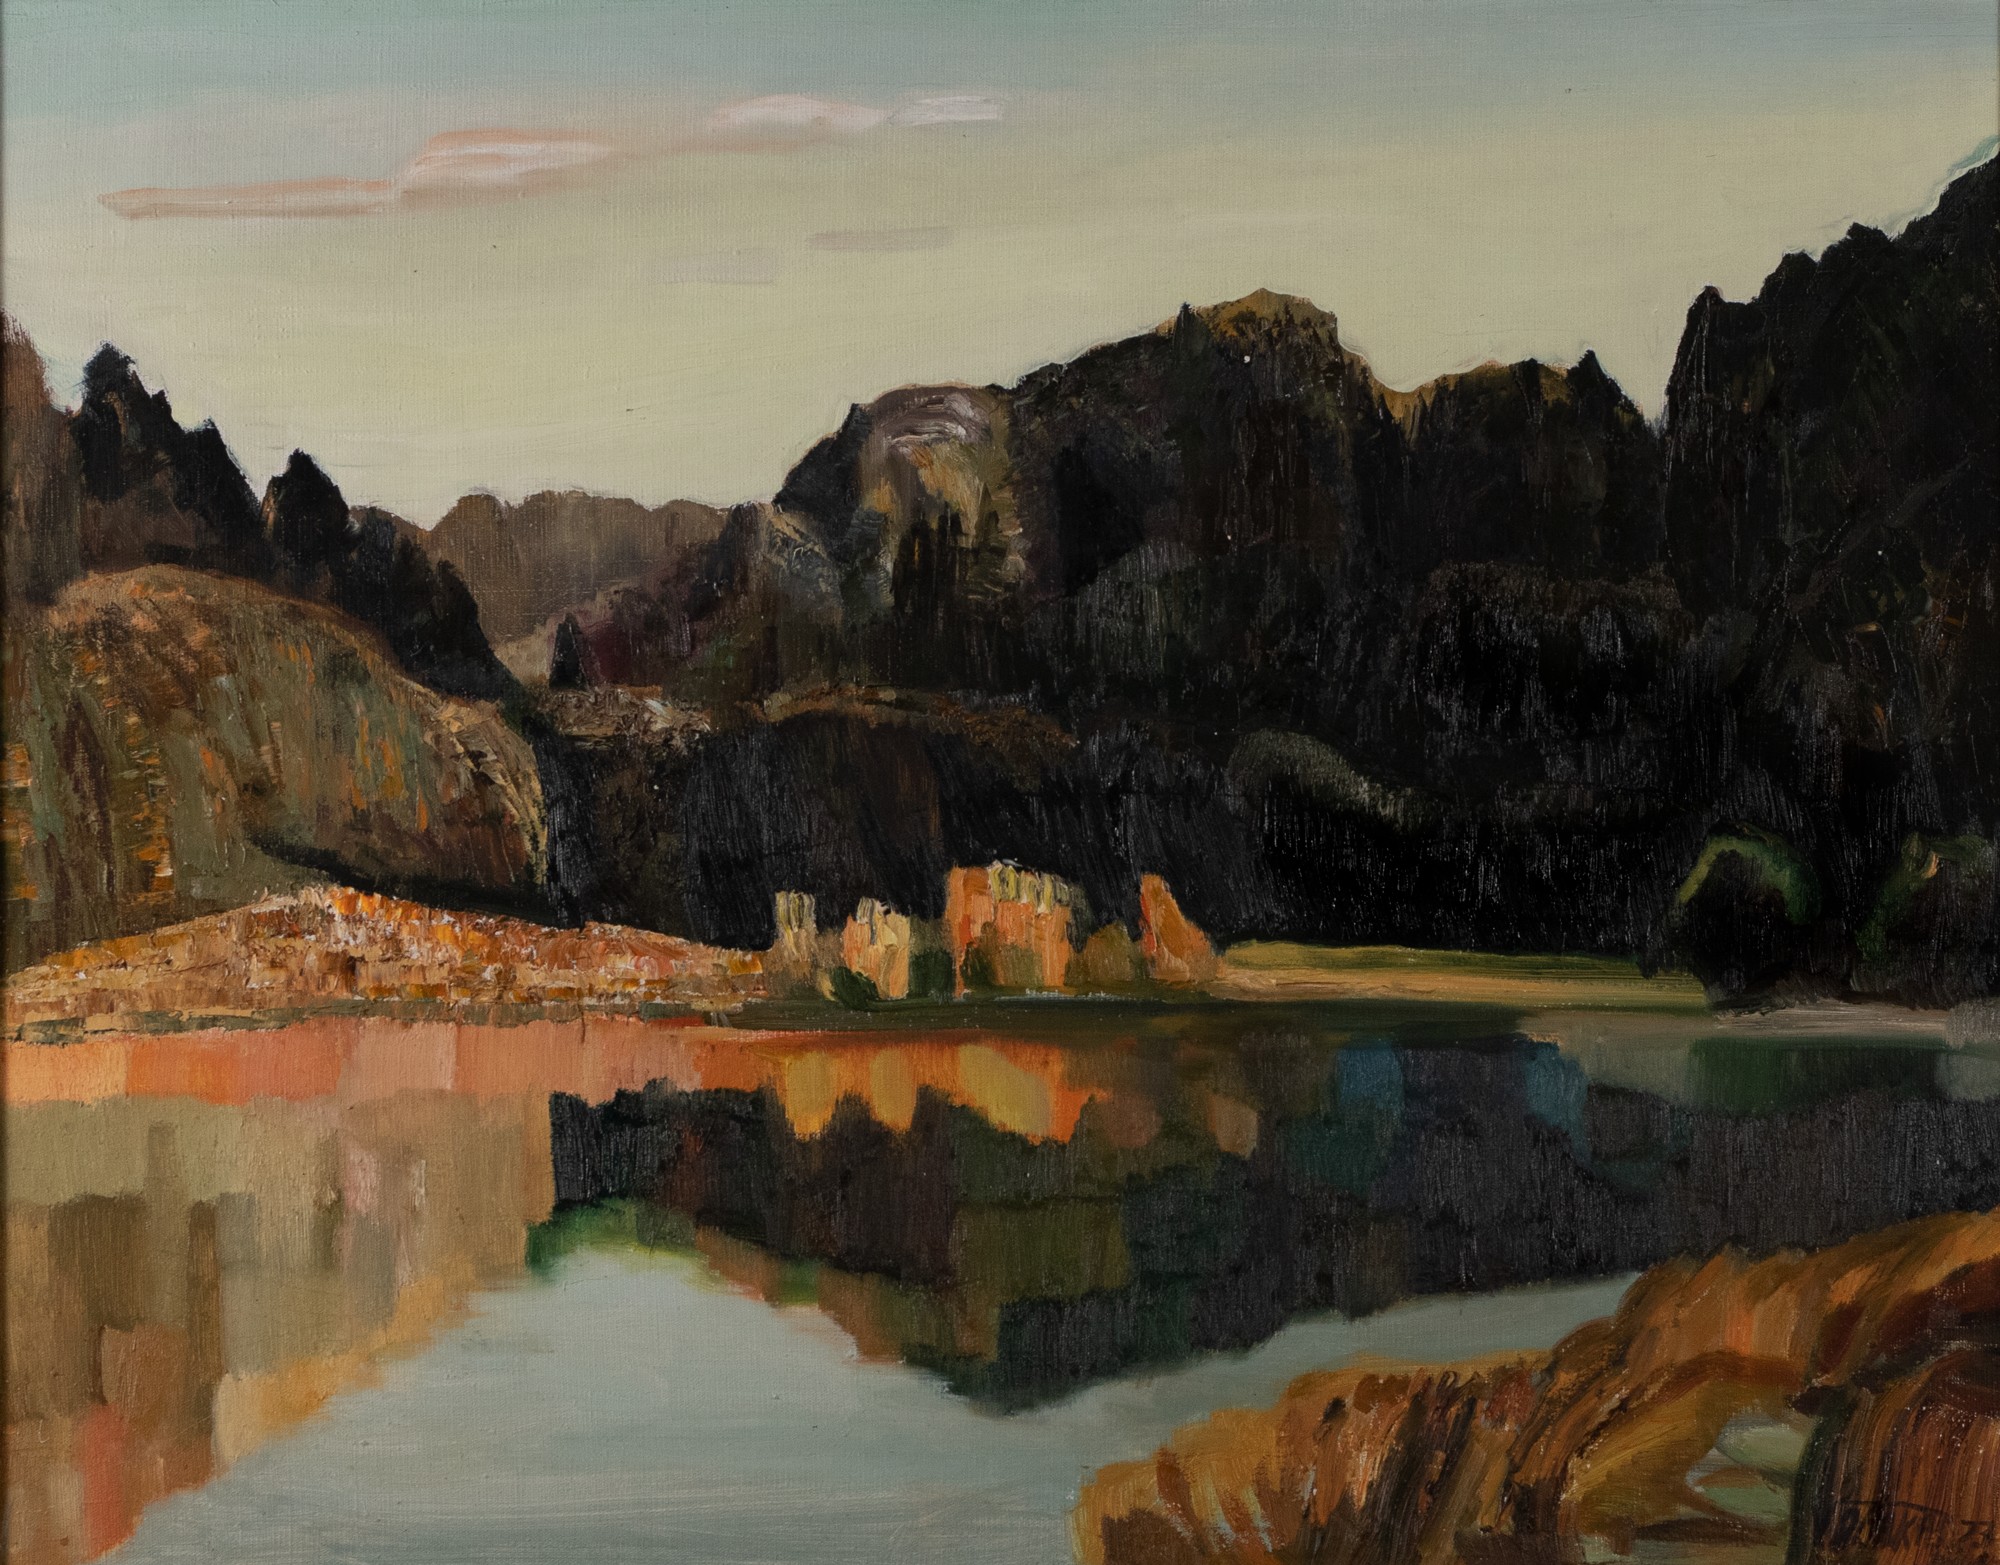 Valdur Ohakas "Reflection of the Lake"